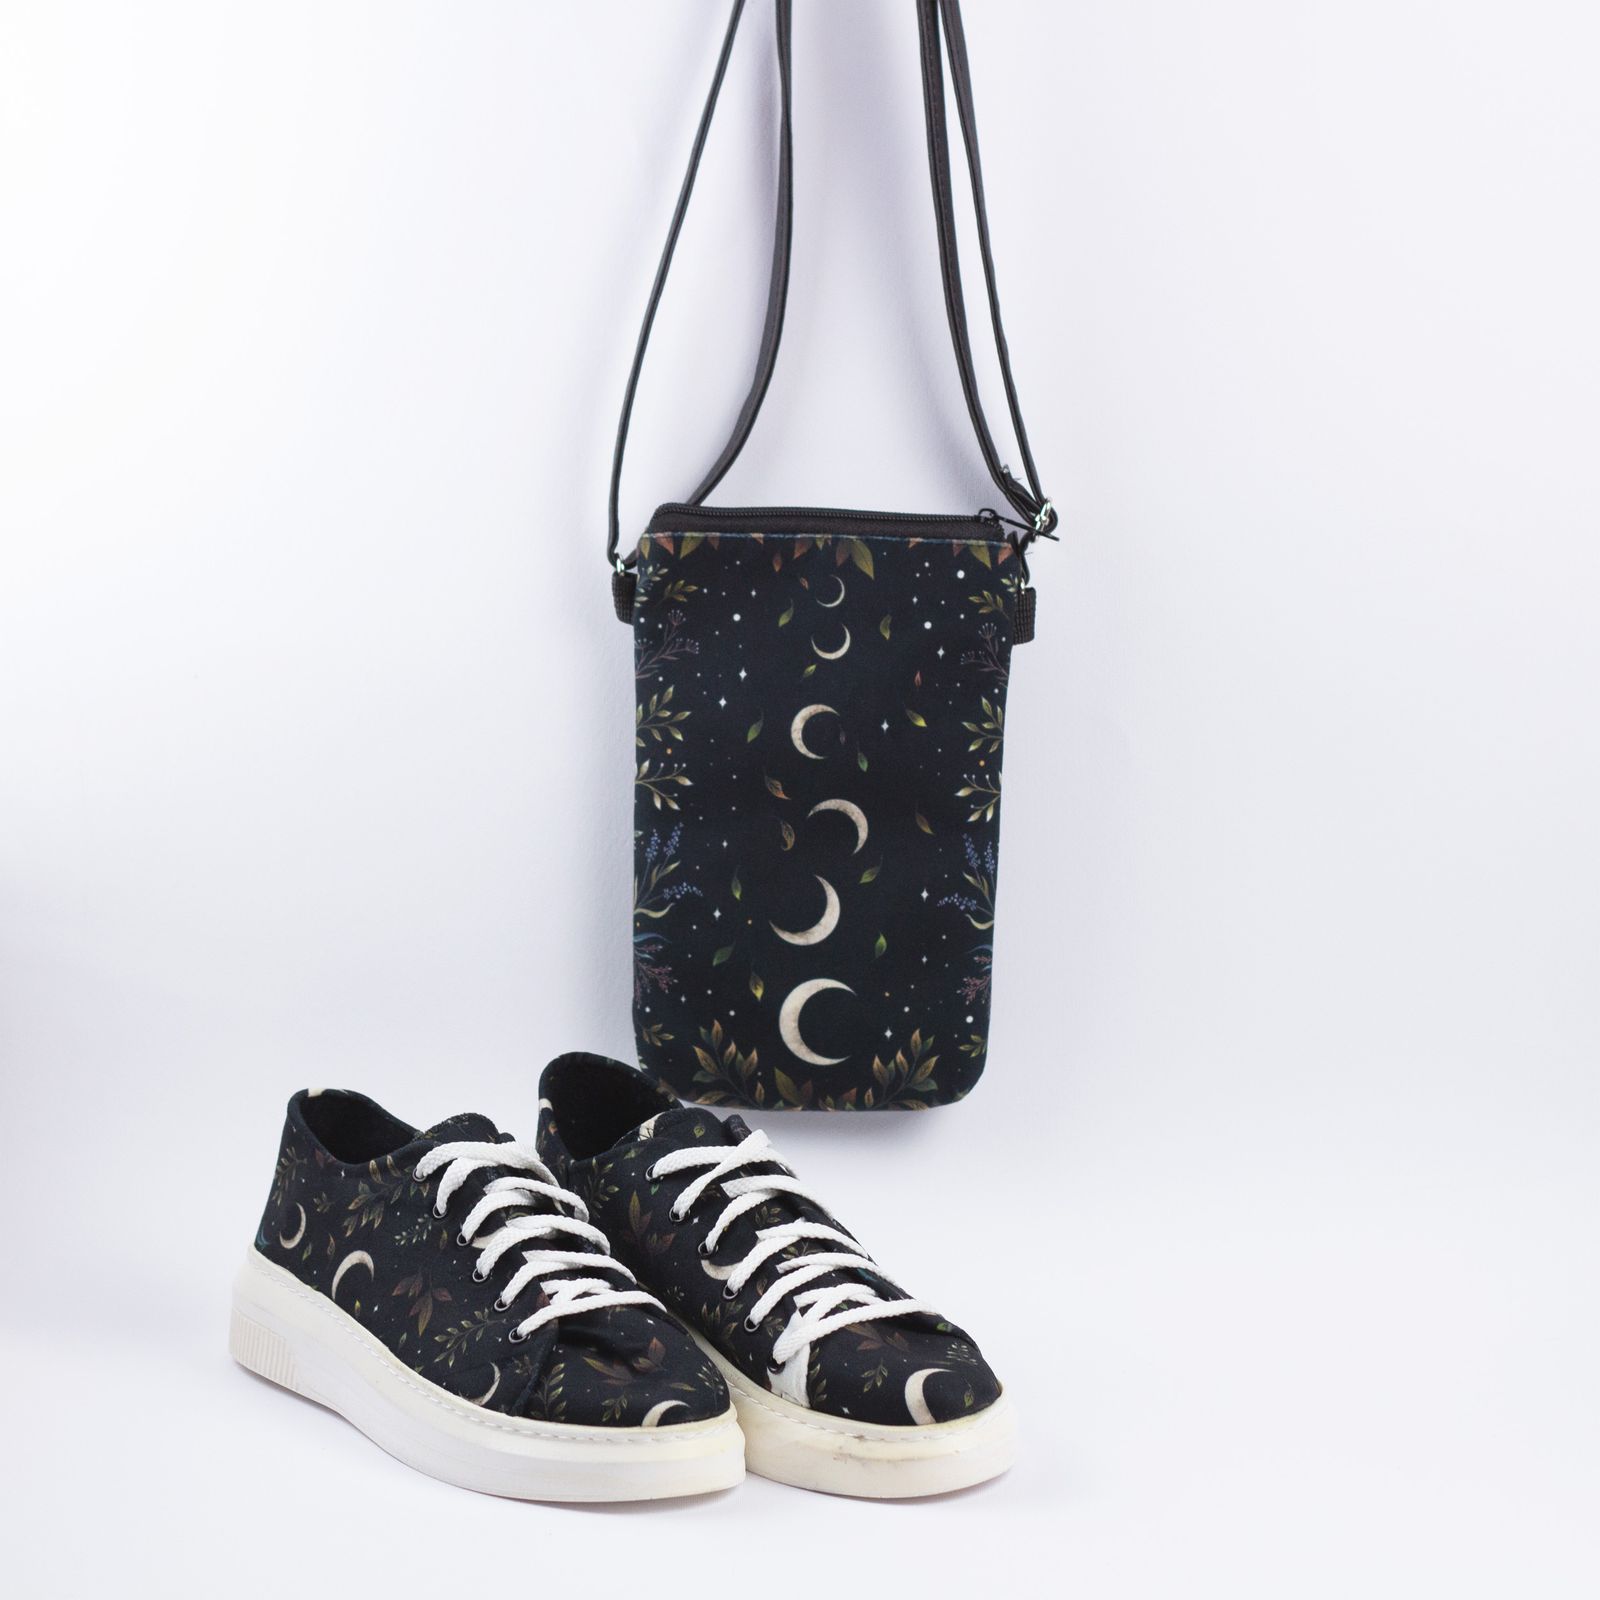 ست کیف و کفش زنانه مدل ماه -  - 4